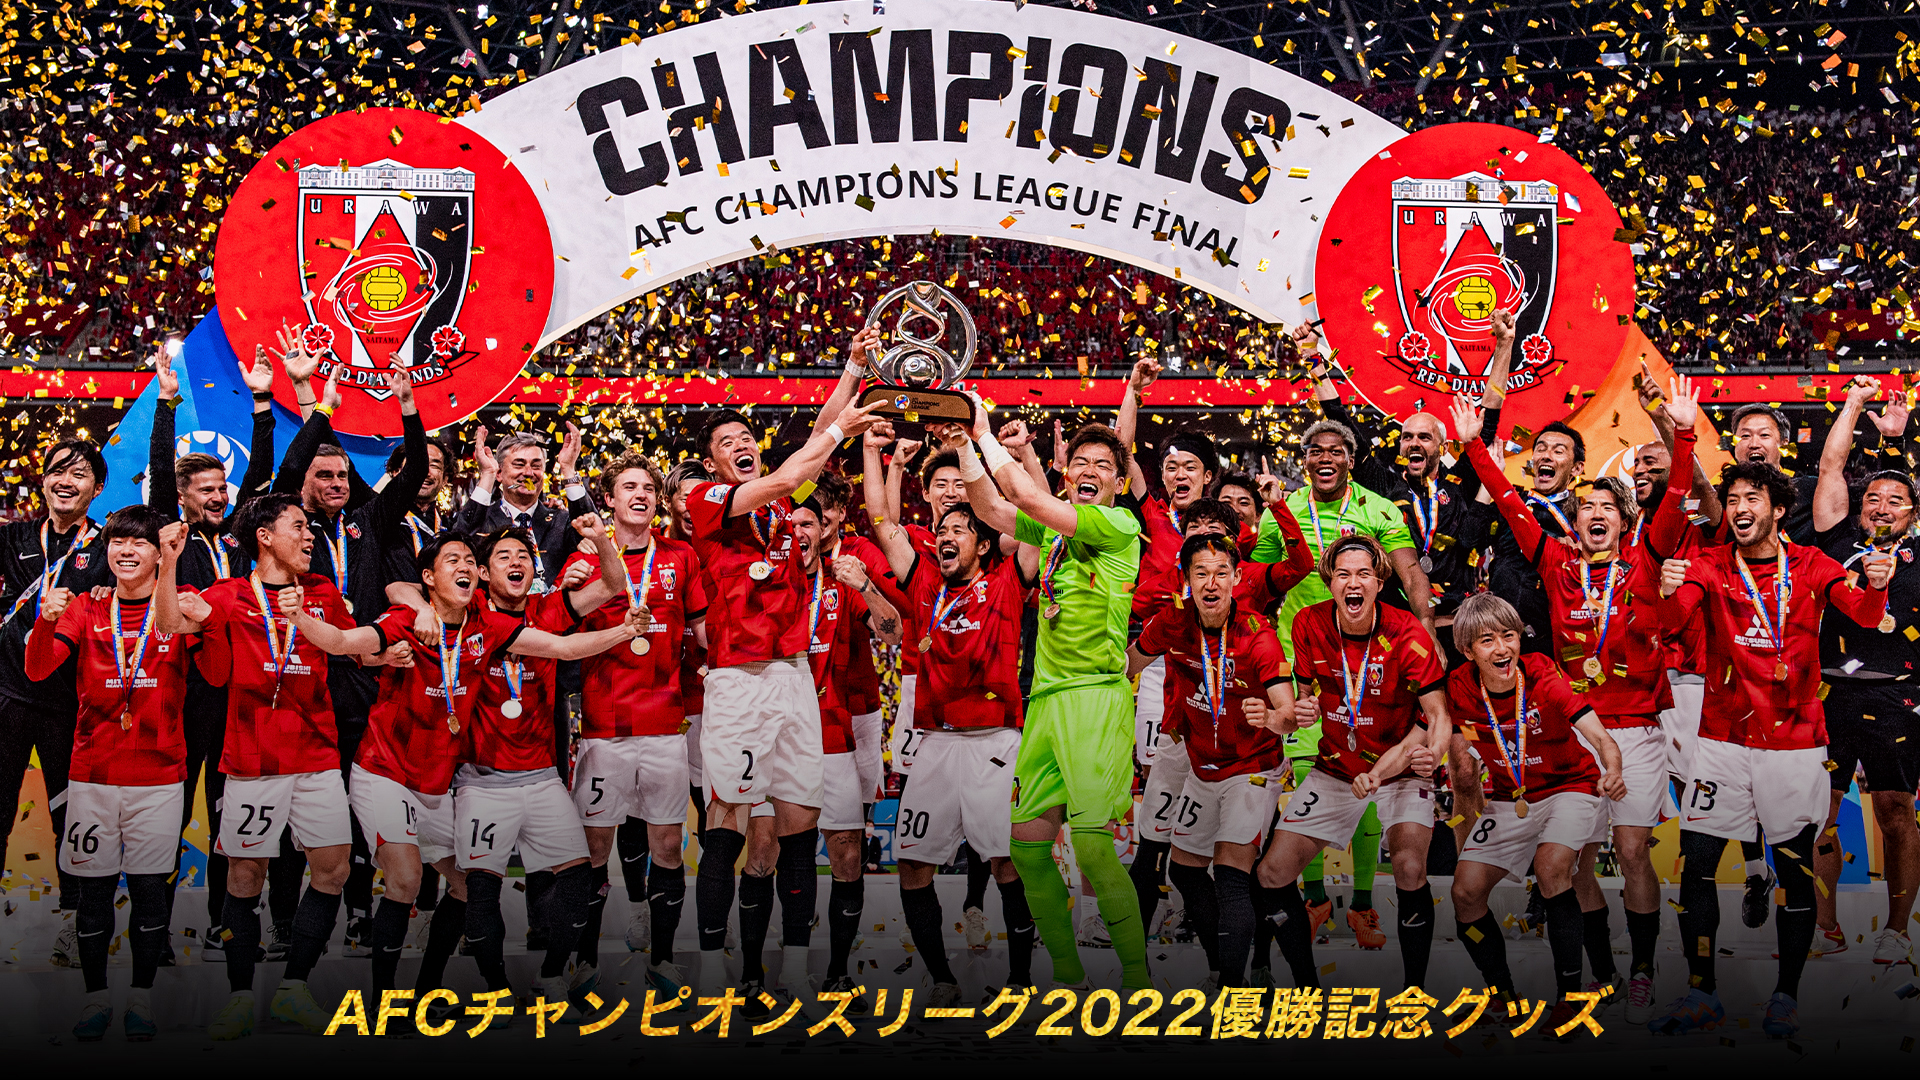 AFCチャンピオンズリーグ2022 優勝記念グッズ 第1弾」受注販売中!(5/23